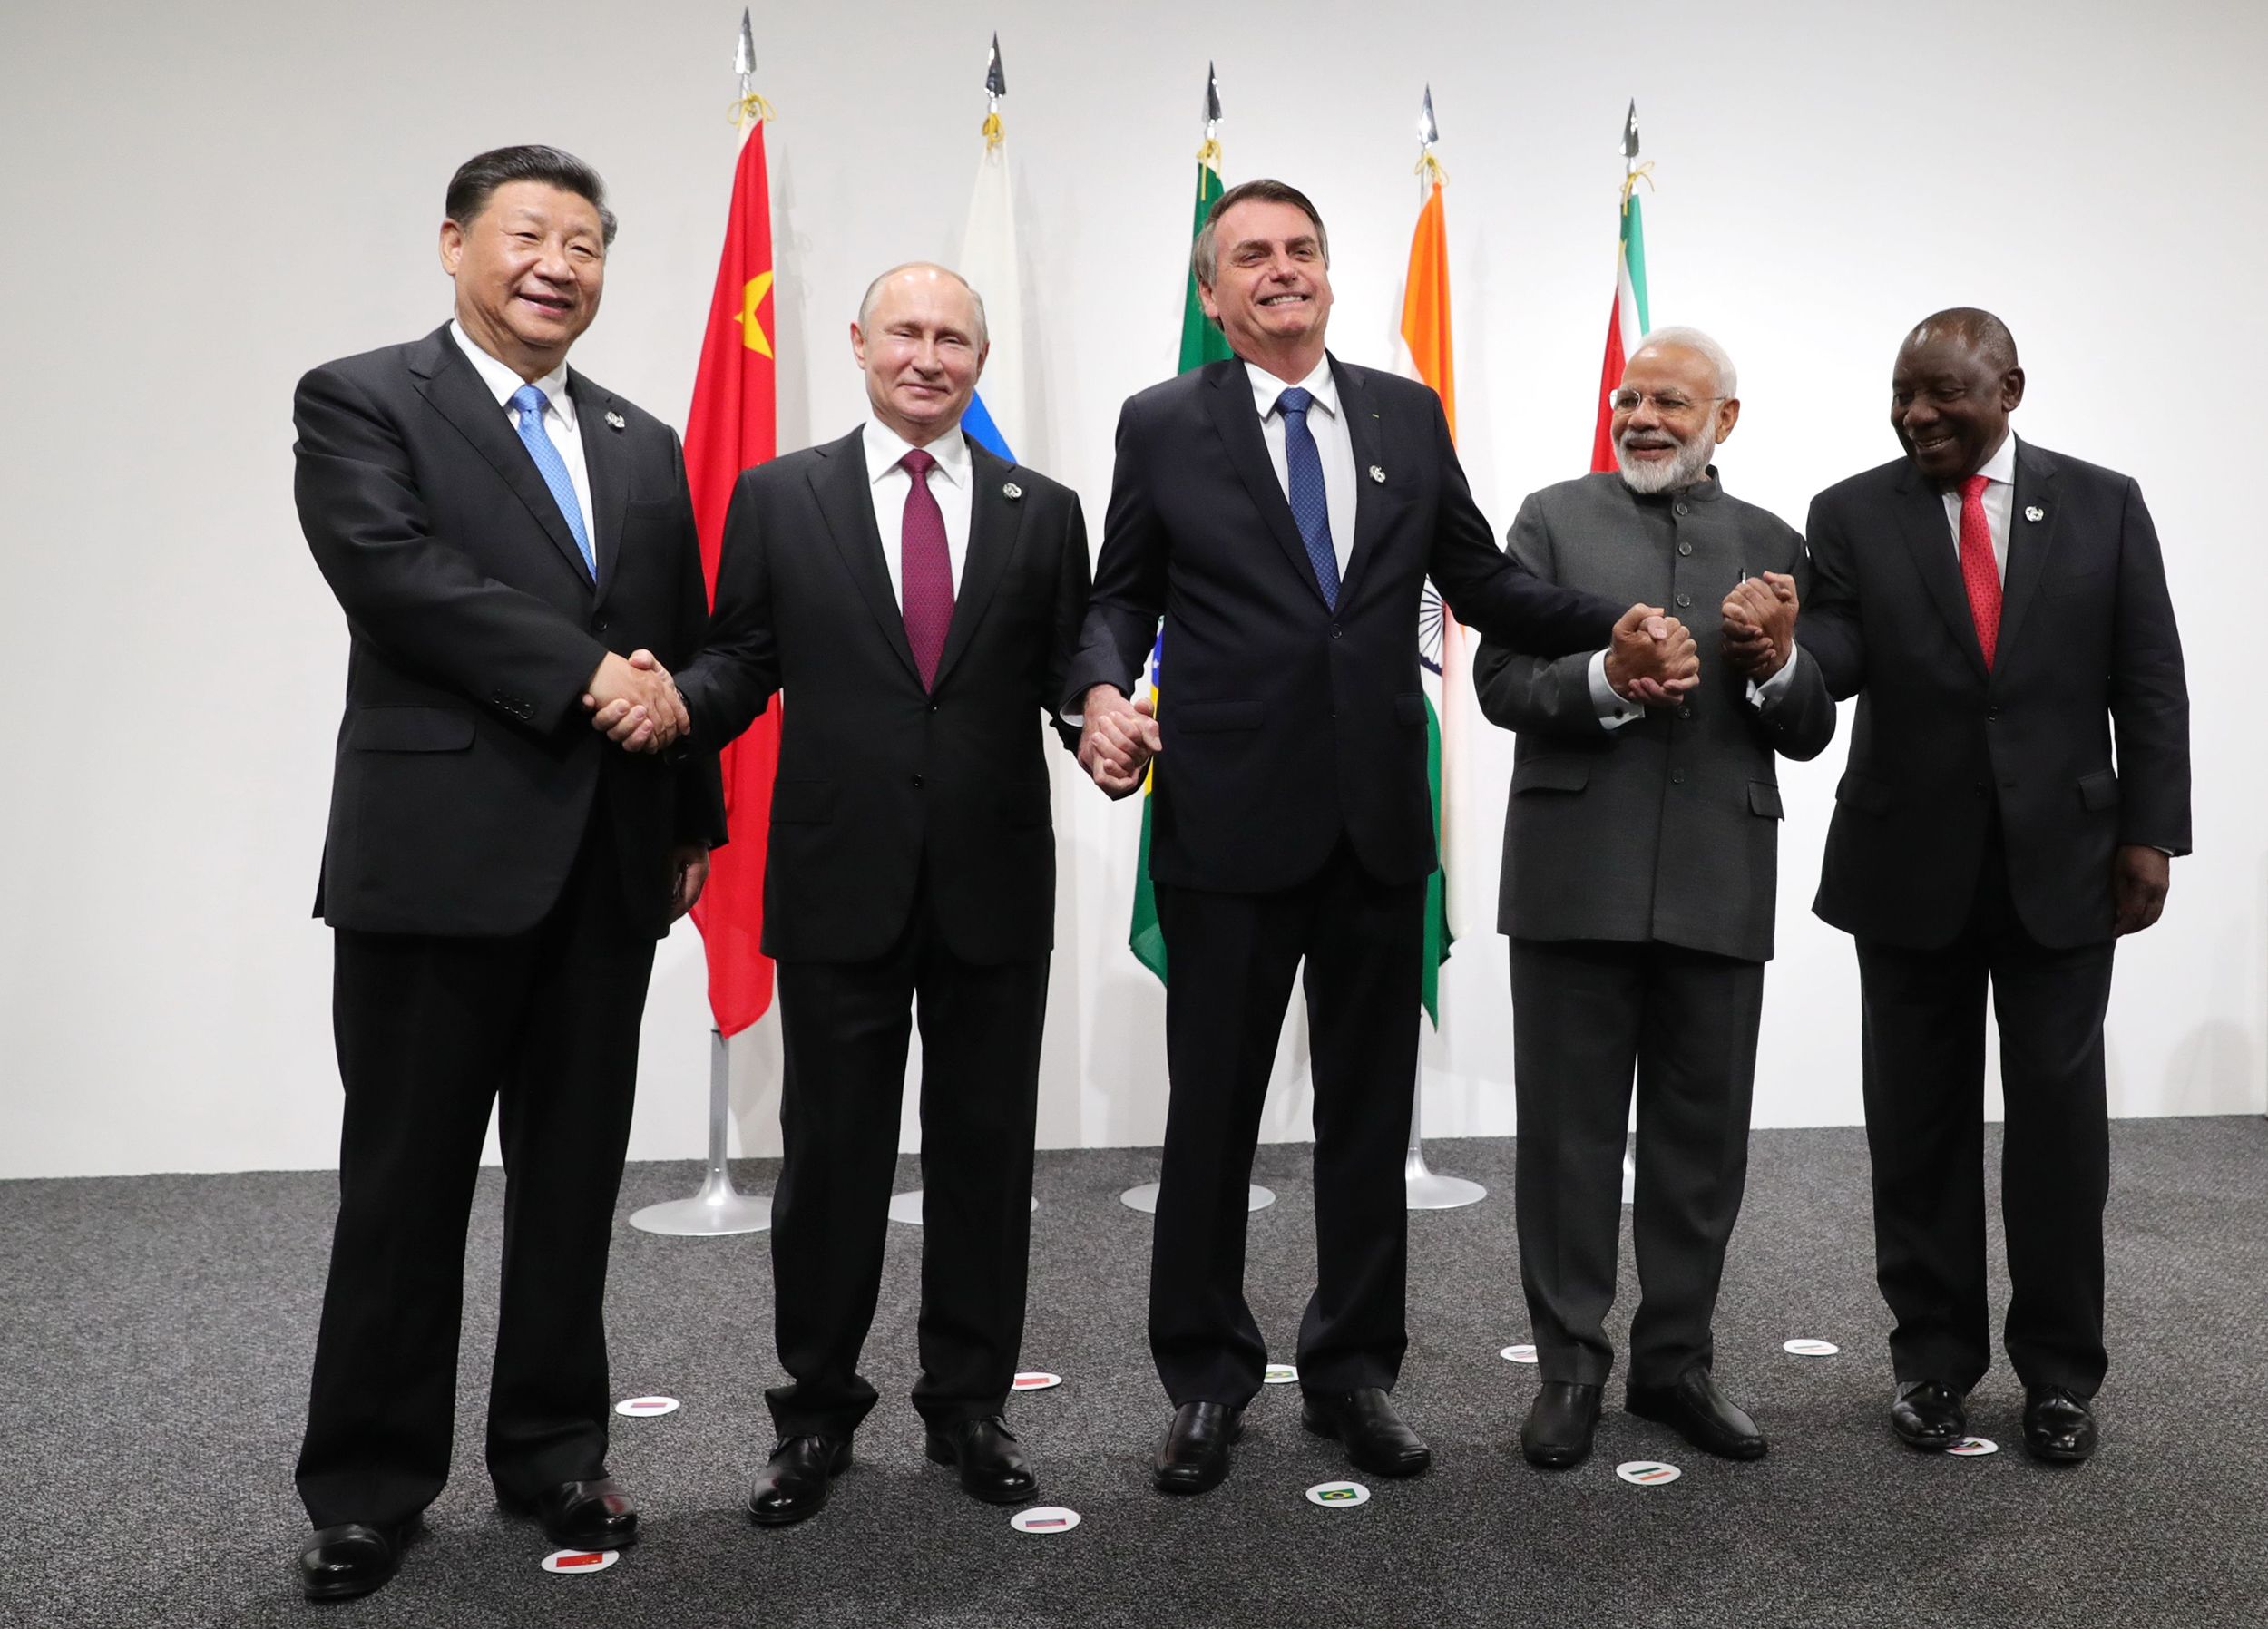 Νότια Αφρική για ένταλμα ΔΠΔ: «Κάνουμε τις απαραίτητες διευθετήσεις για να παρευρεθεί ο Β.Πούτιν στην σύνοδο των  BRICS»